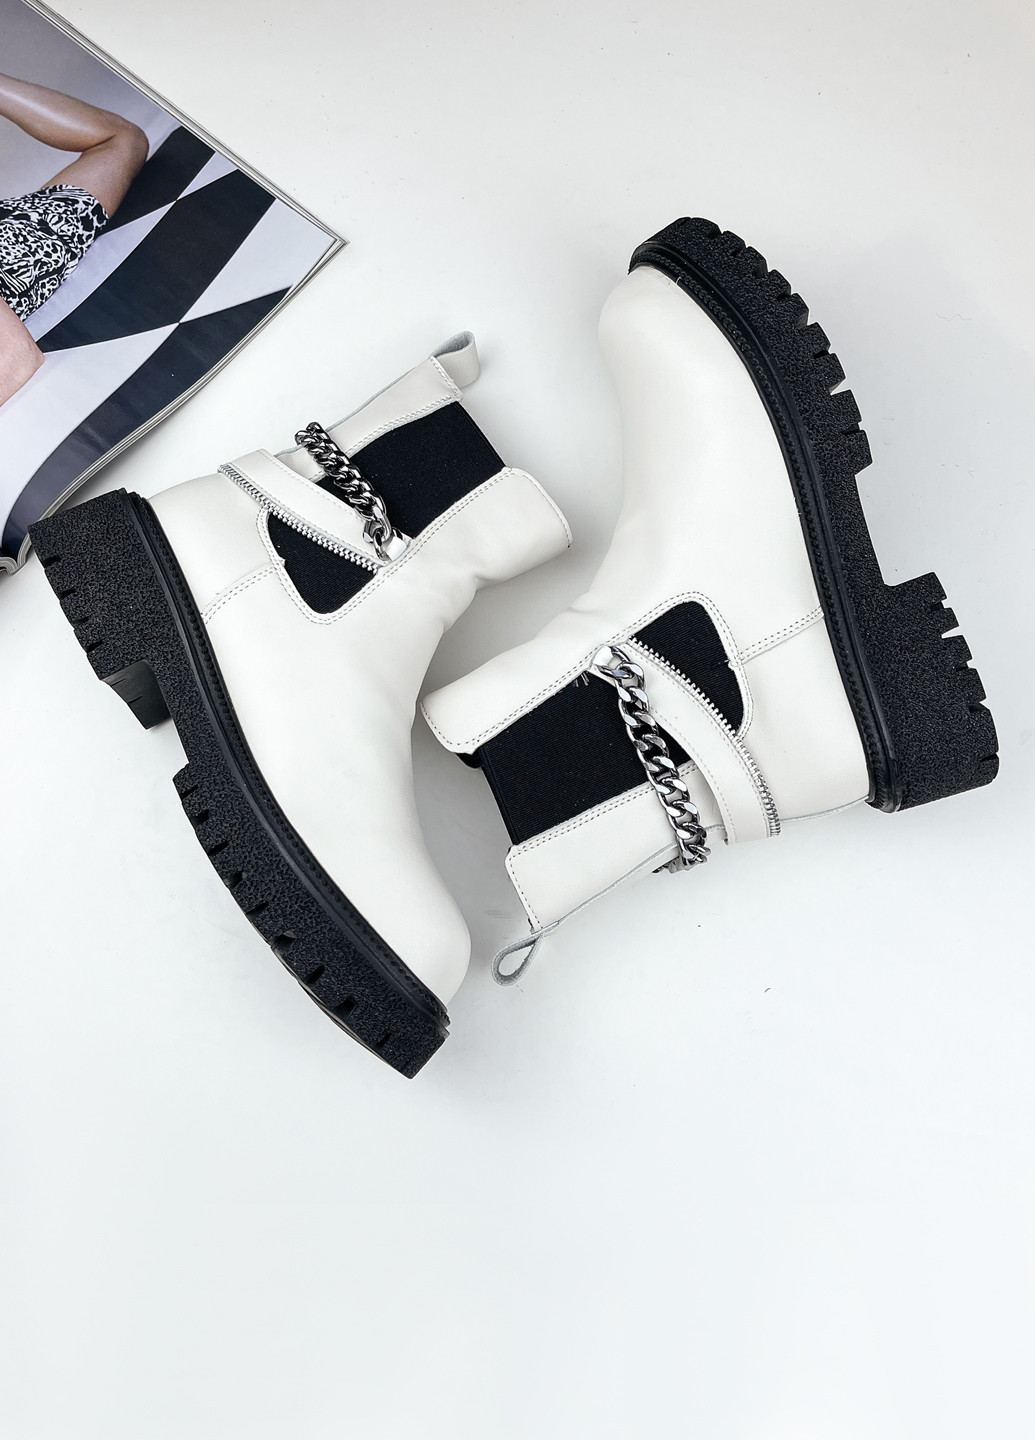 Осенние ботинки женские молодежные белые кожаные на тракторной черной подошве челси Fashion из искусственной кожи